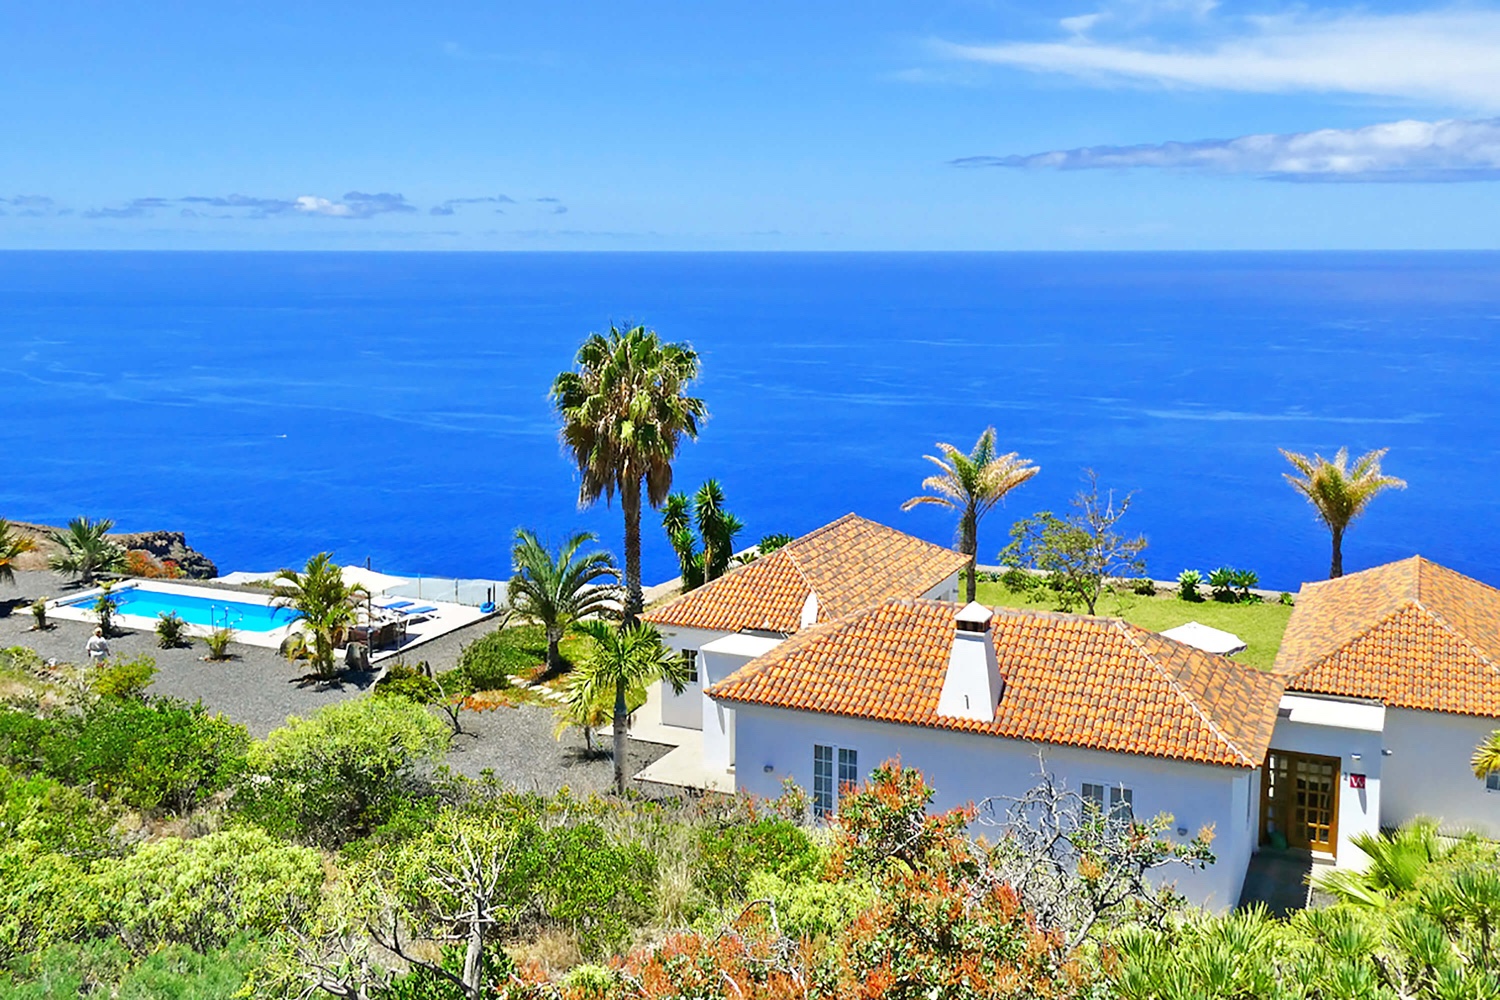 Sehr schönes modernes Haus mit privatem Pool und herrlichem Panoramablick auf den Atlantik. Das sehr gut ausgestattete Ferienhaus ist ideal für einen Urlaub auf La Palma mit allem Komfort.